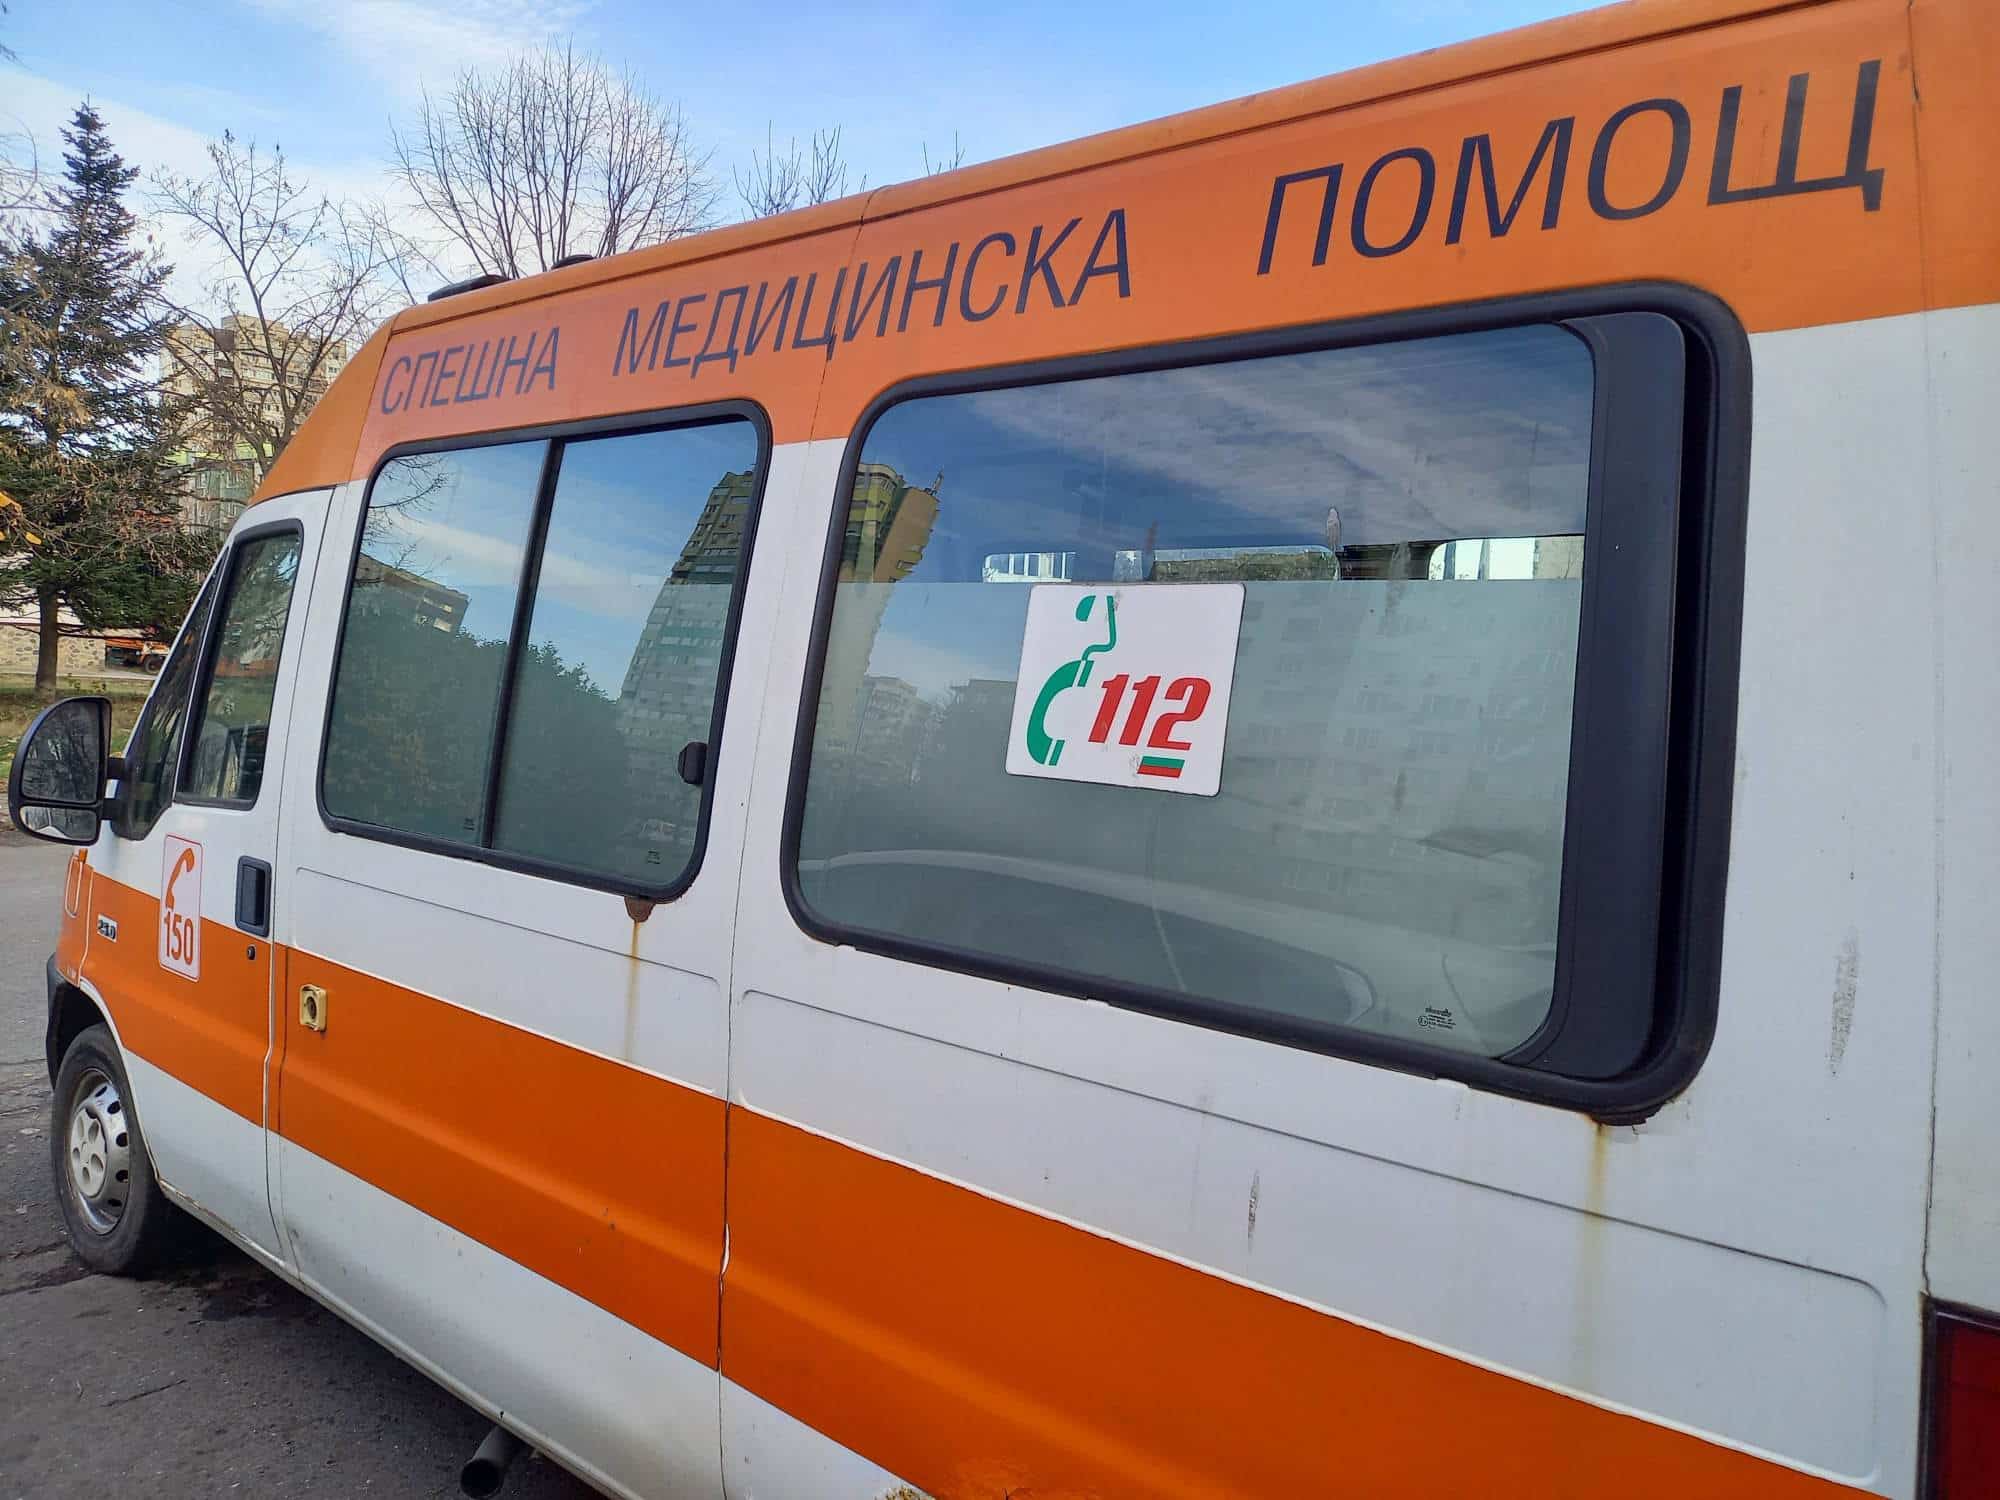 Камион и автобус, превозващ украински граждани, са се сблъскали на